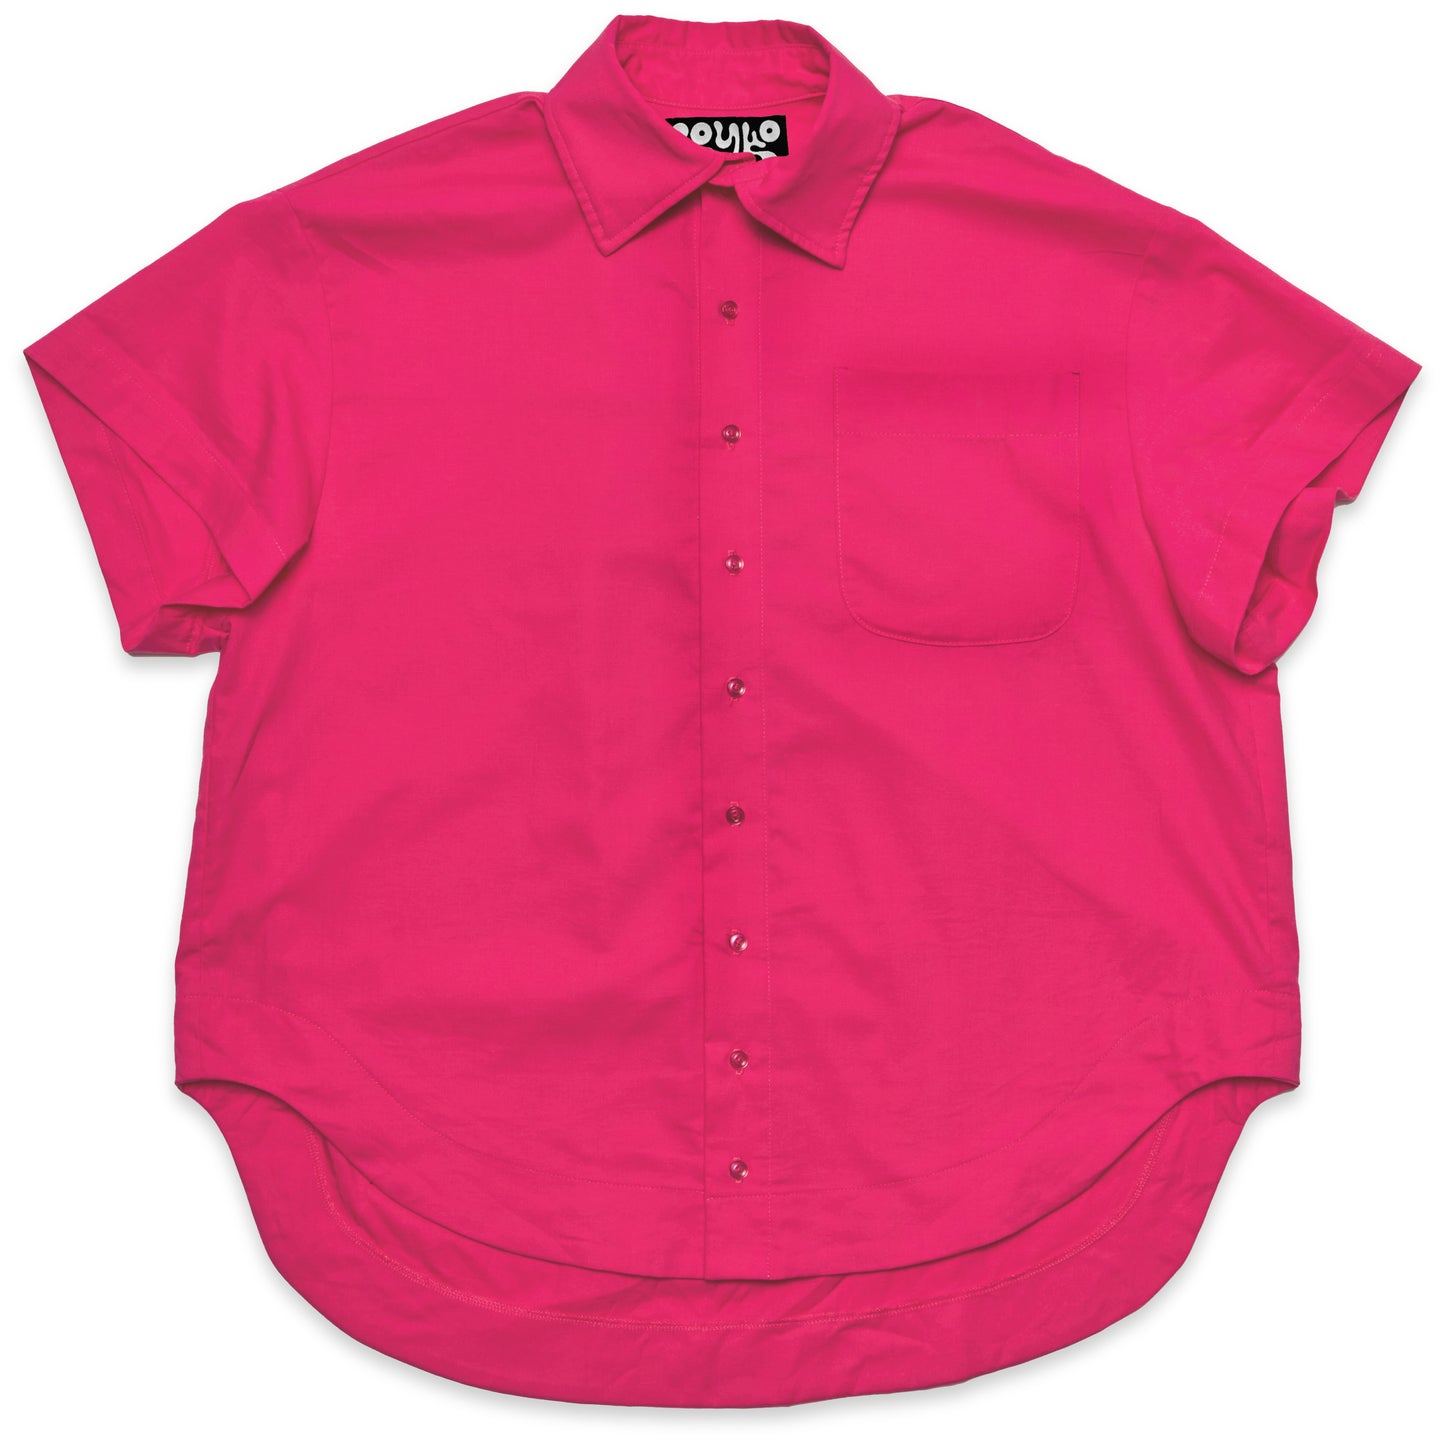 Charlie Shirt - Hot Pink